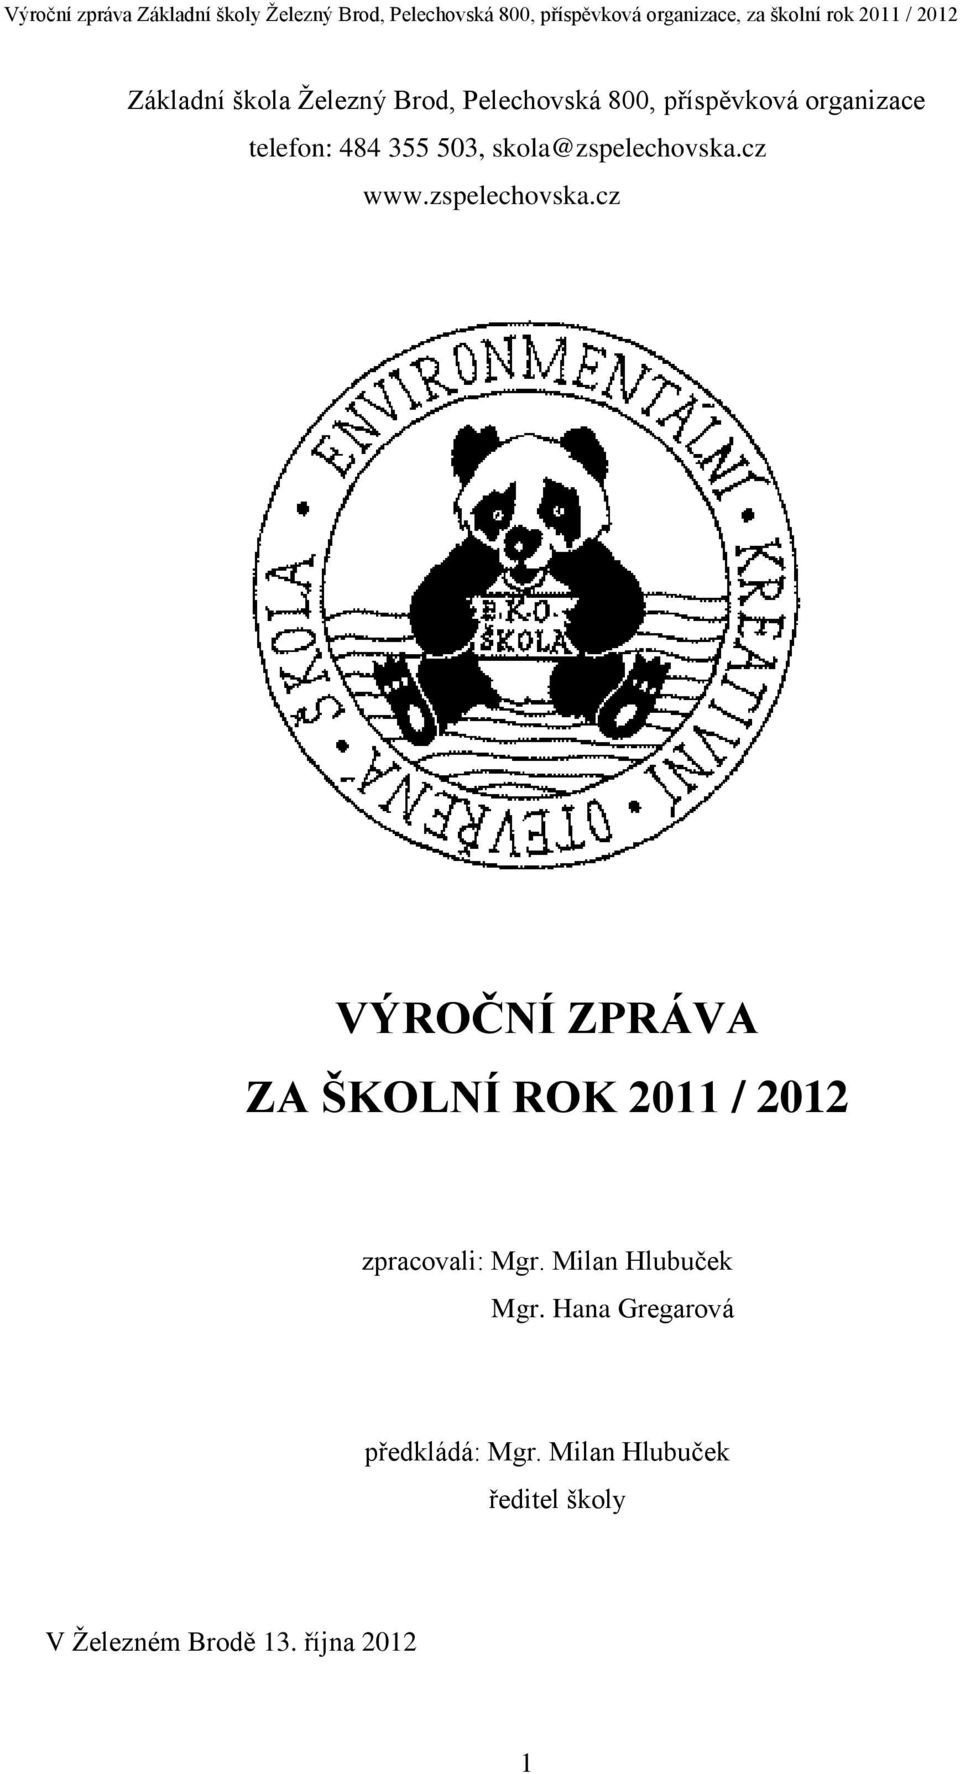 cz www.zspelechovska.